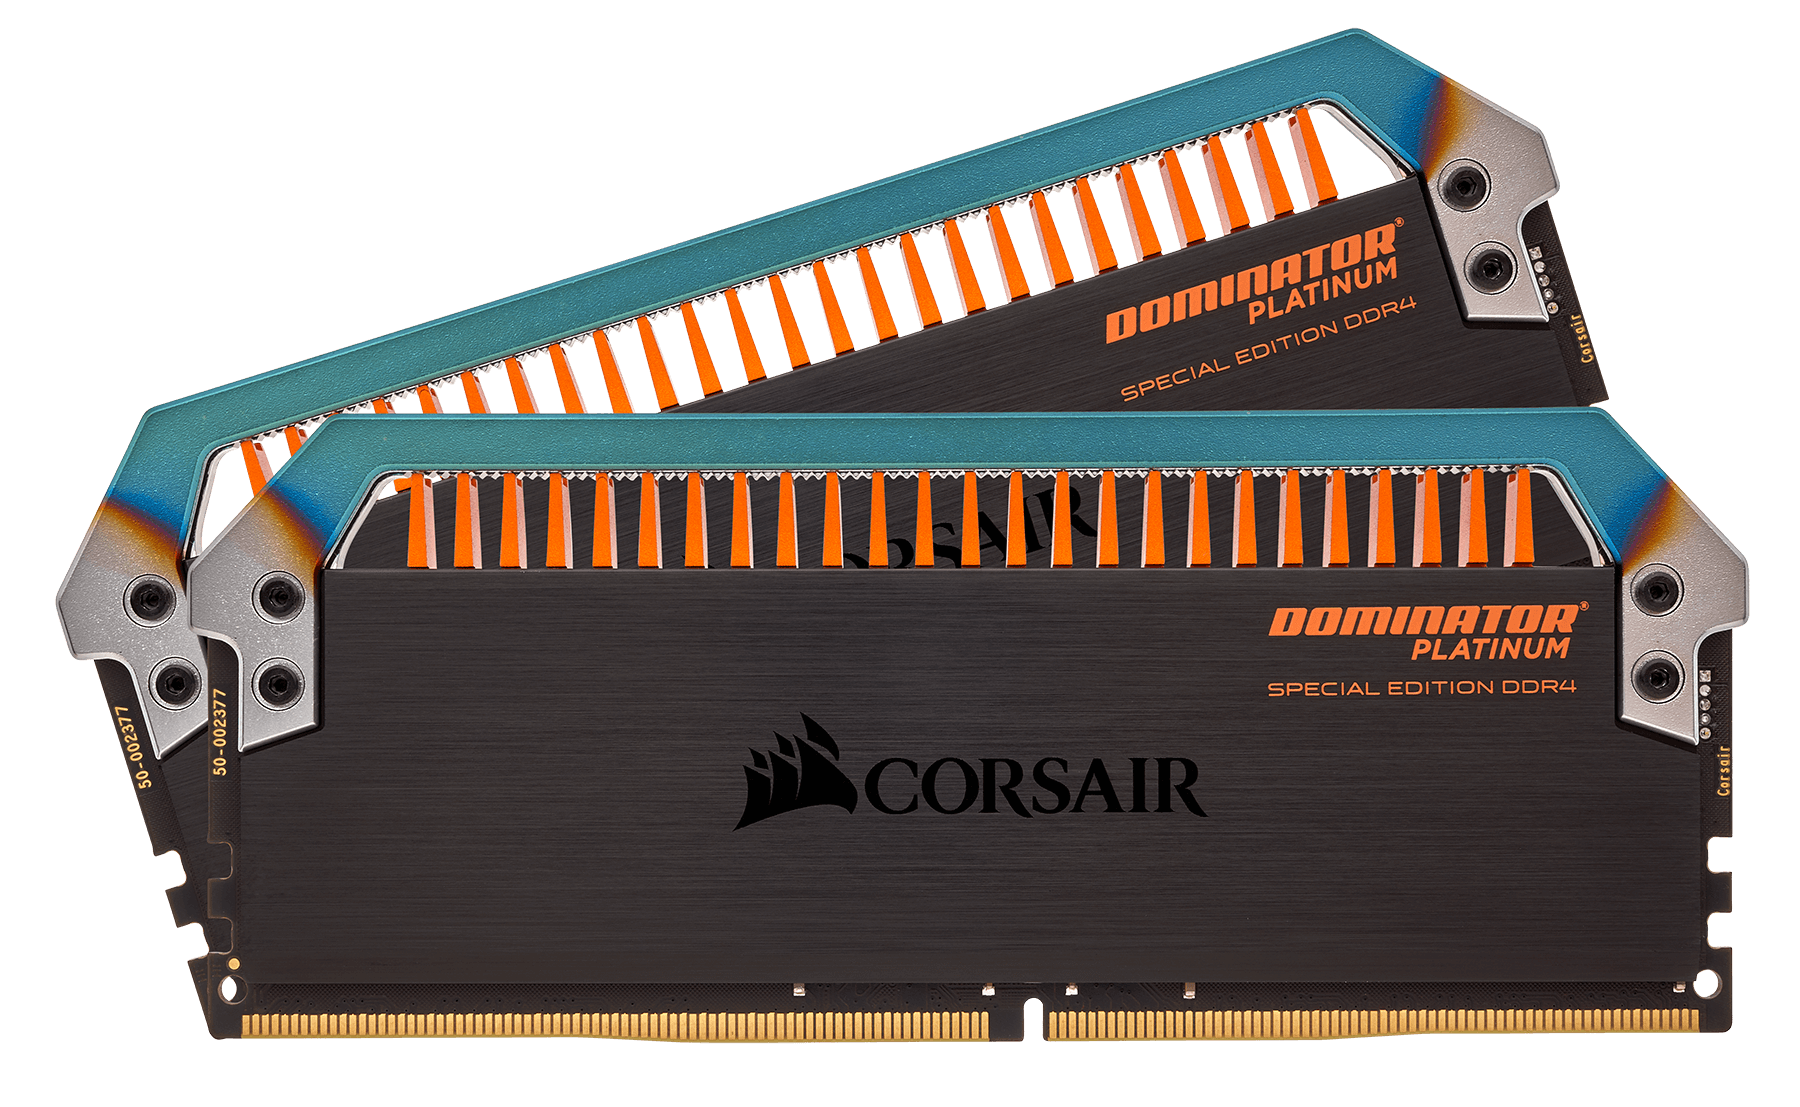 Immagine pubblicata in relazione al seguente contenuto: Corsair commercializza le DDR4 DOMINATOR PLATINUM Special Edition Torque | Nome immagine: news26330_Corsair-DOMINATOR-PLATINUM-Special-Edition-Torque_2.png